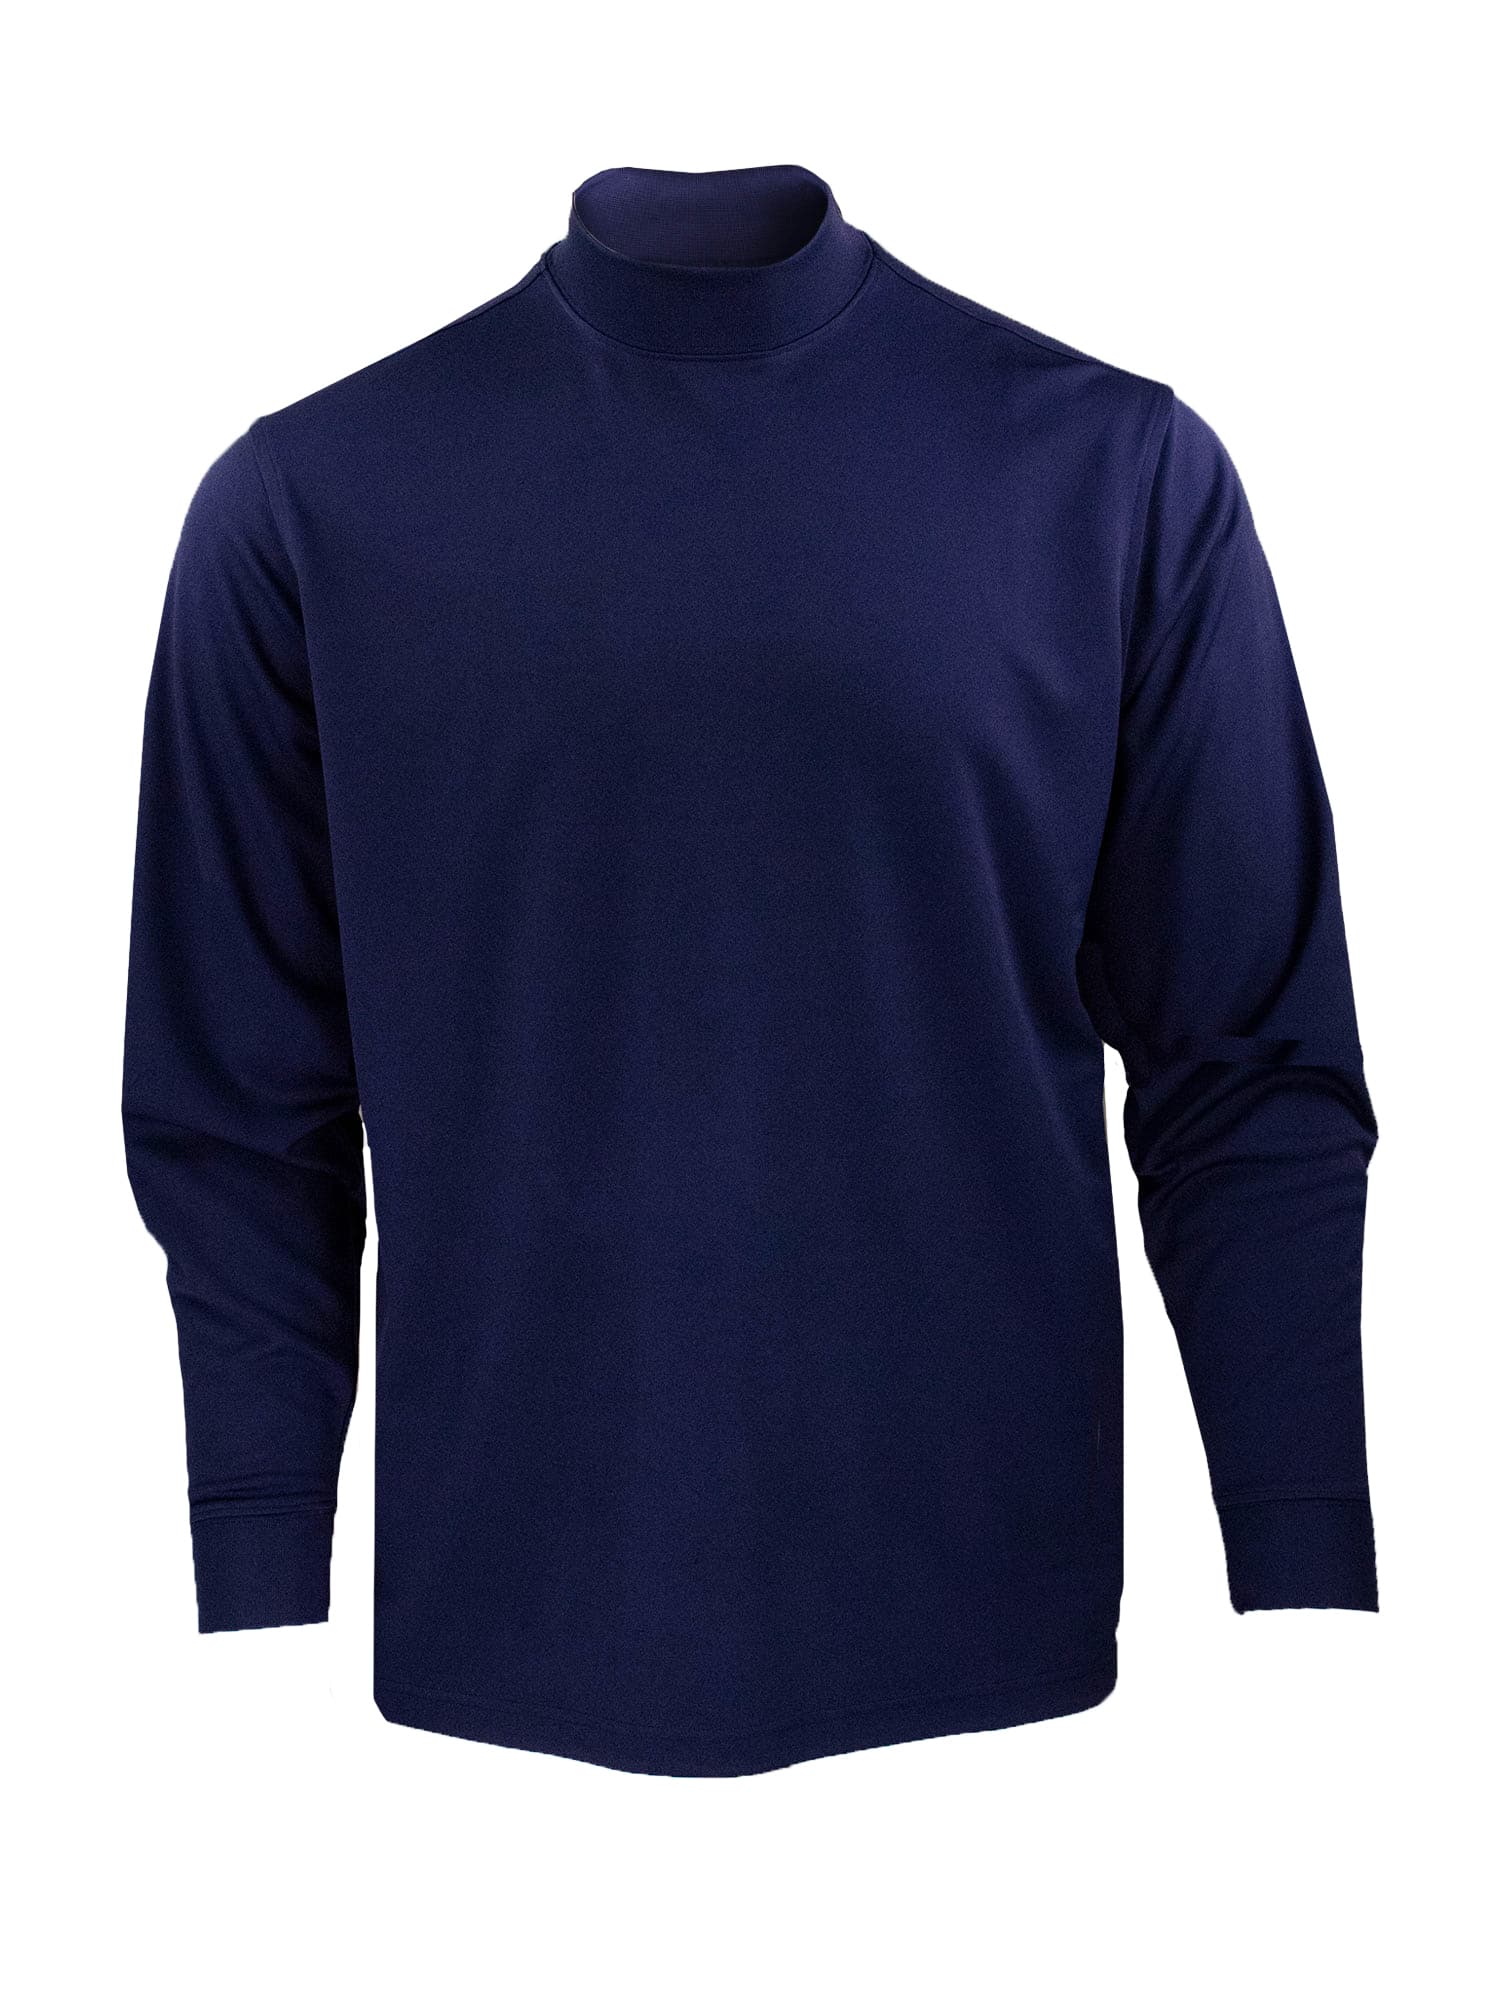 Download Long Sleeve Mock Neck Jersey - Navy - Donald Ross Sportswear